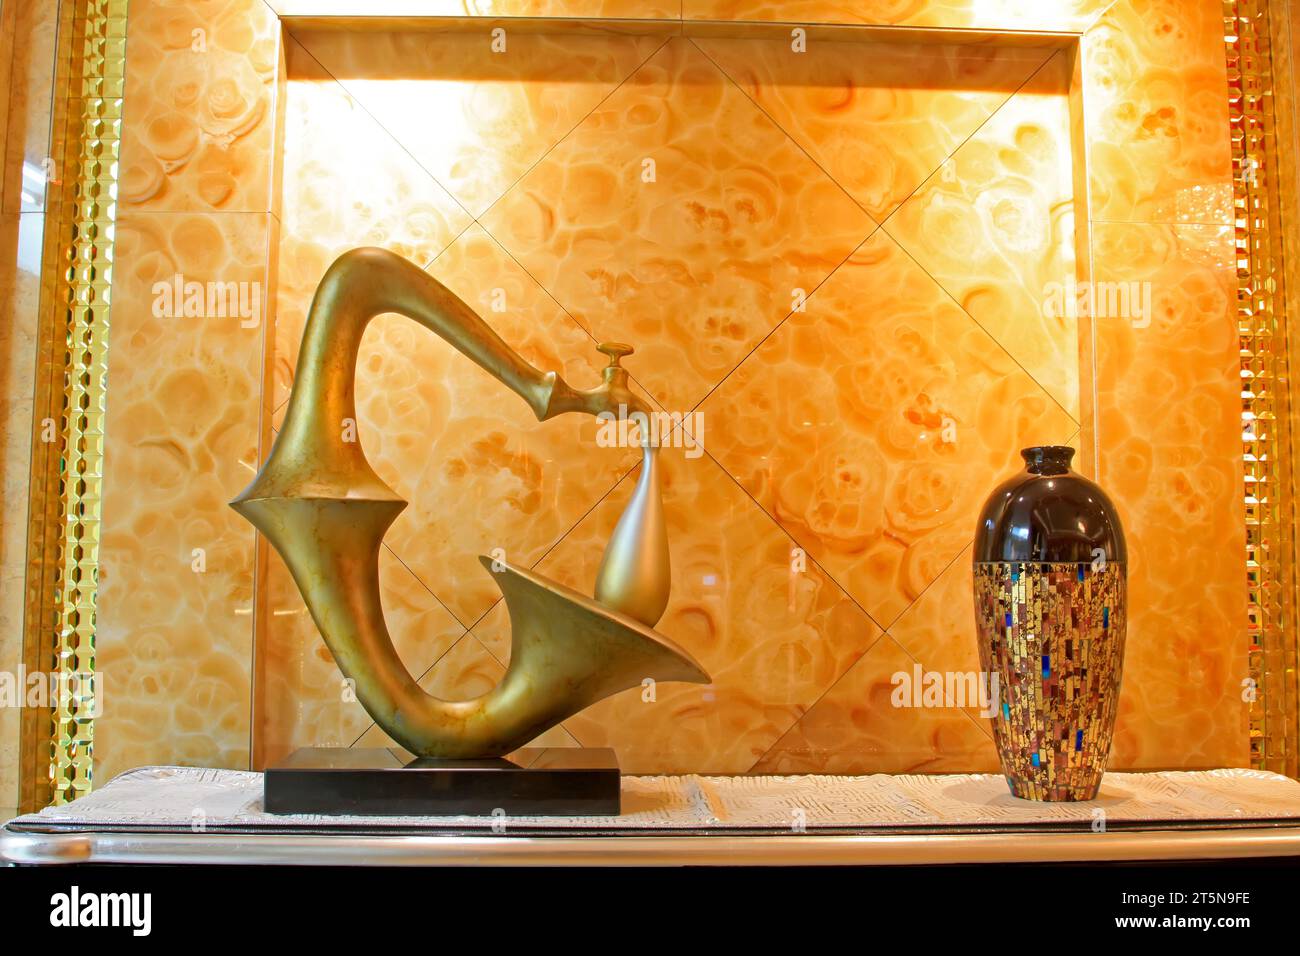 ornements en forme de corne de robinet et céramique à l'intérieur, gros plan de la photo Banque D'Images